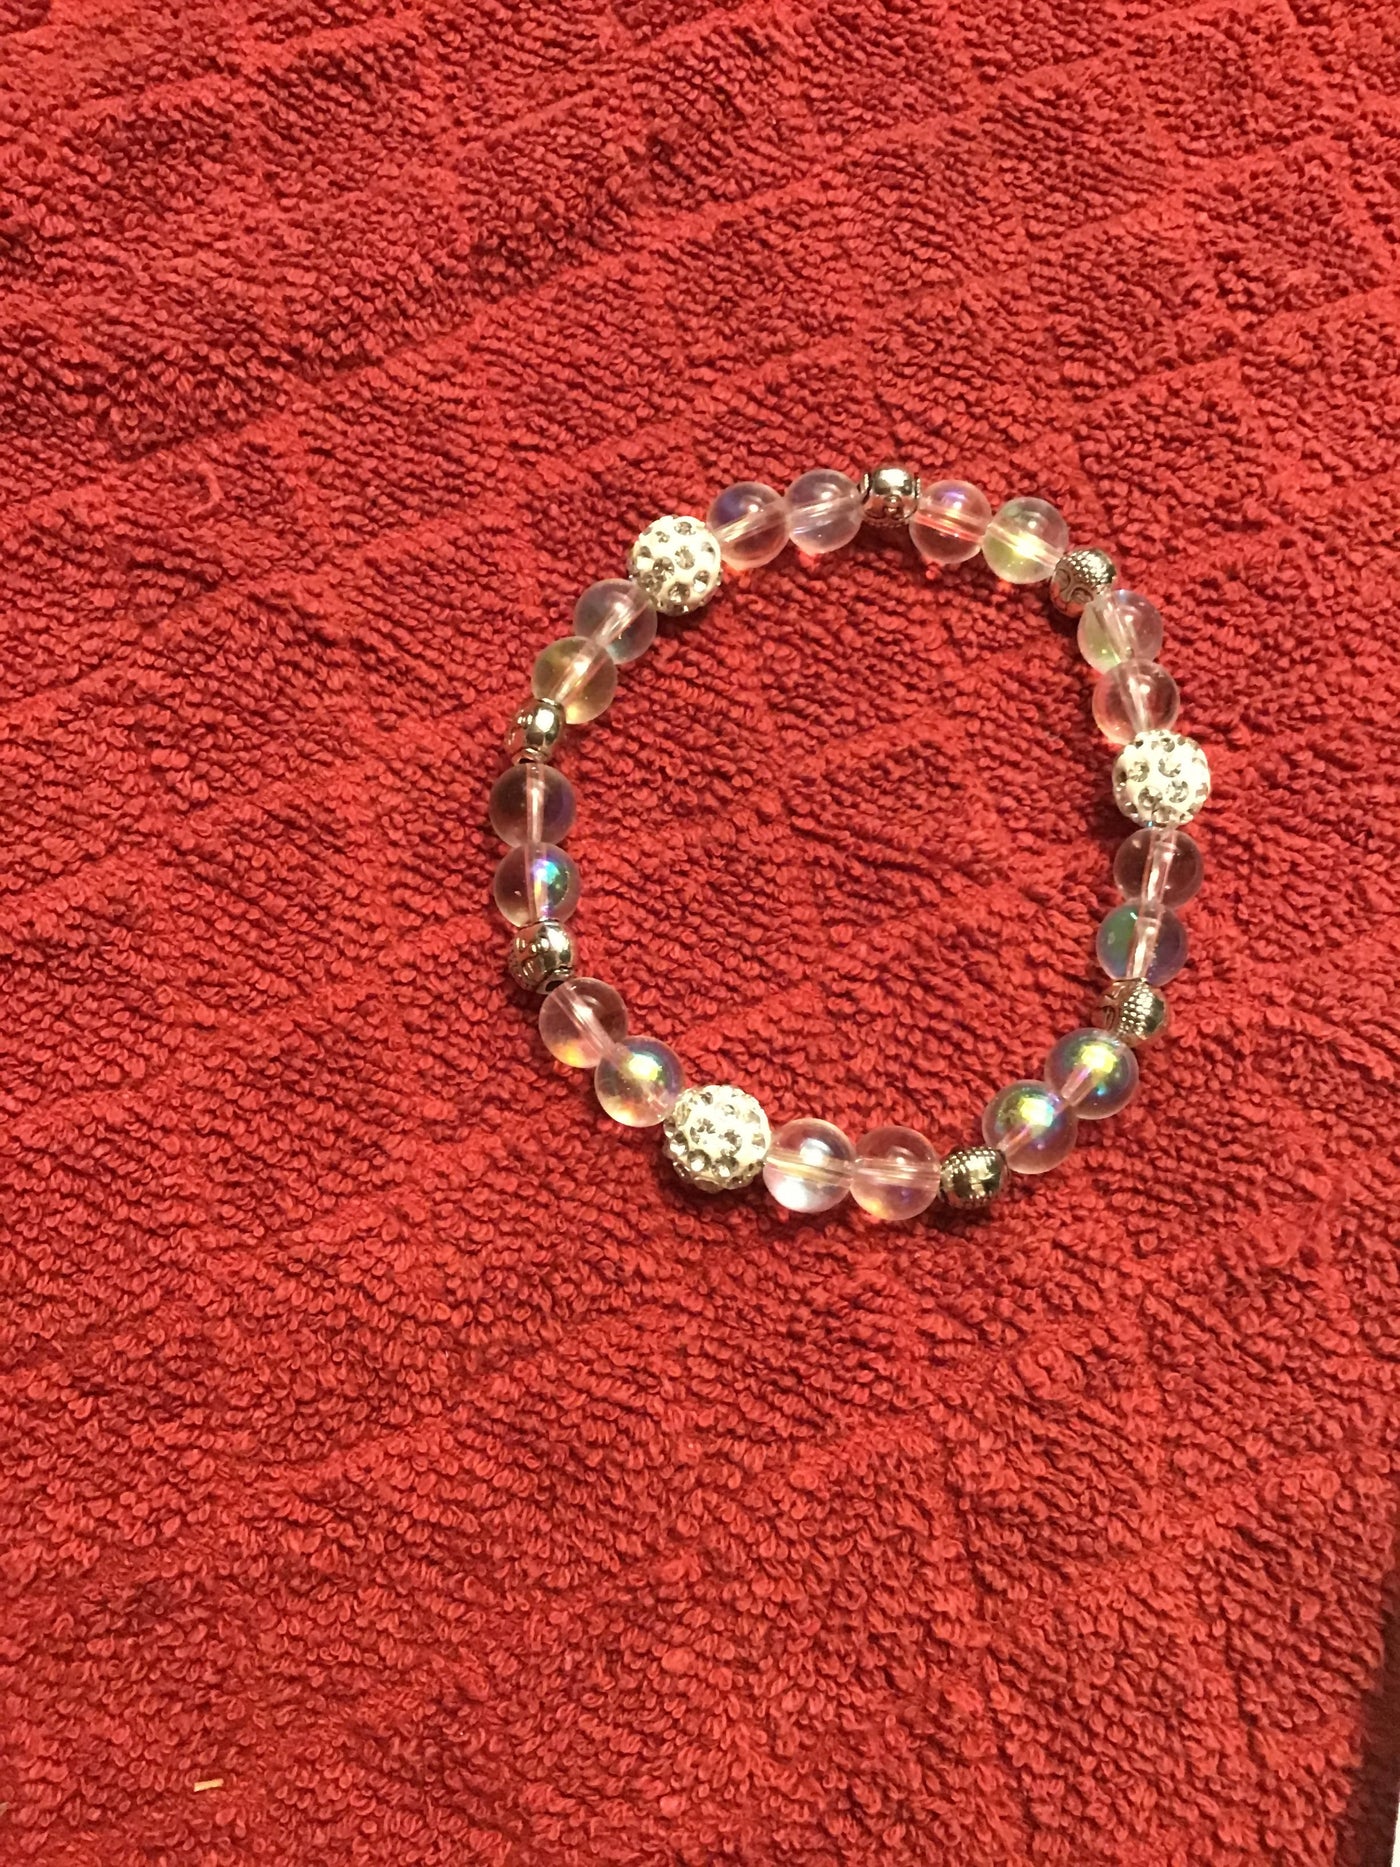 Sparkle Bracelet – The Hobnobber